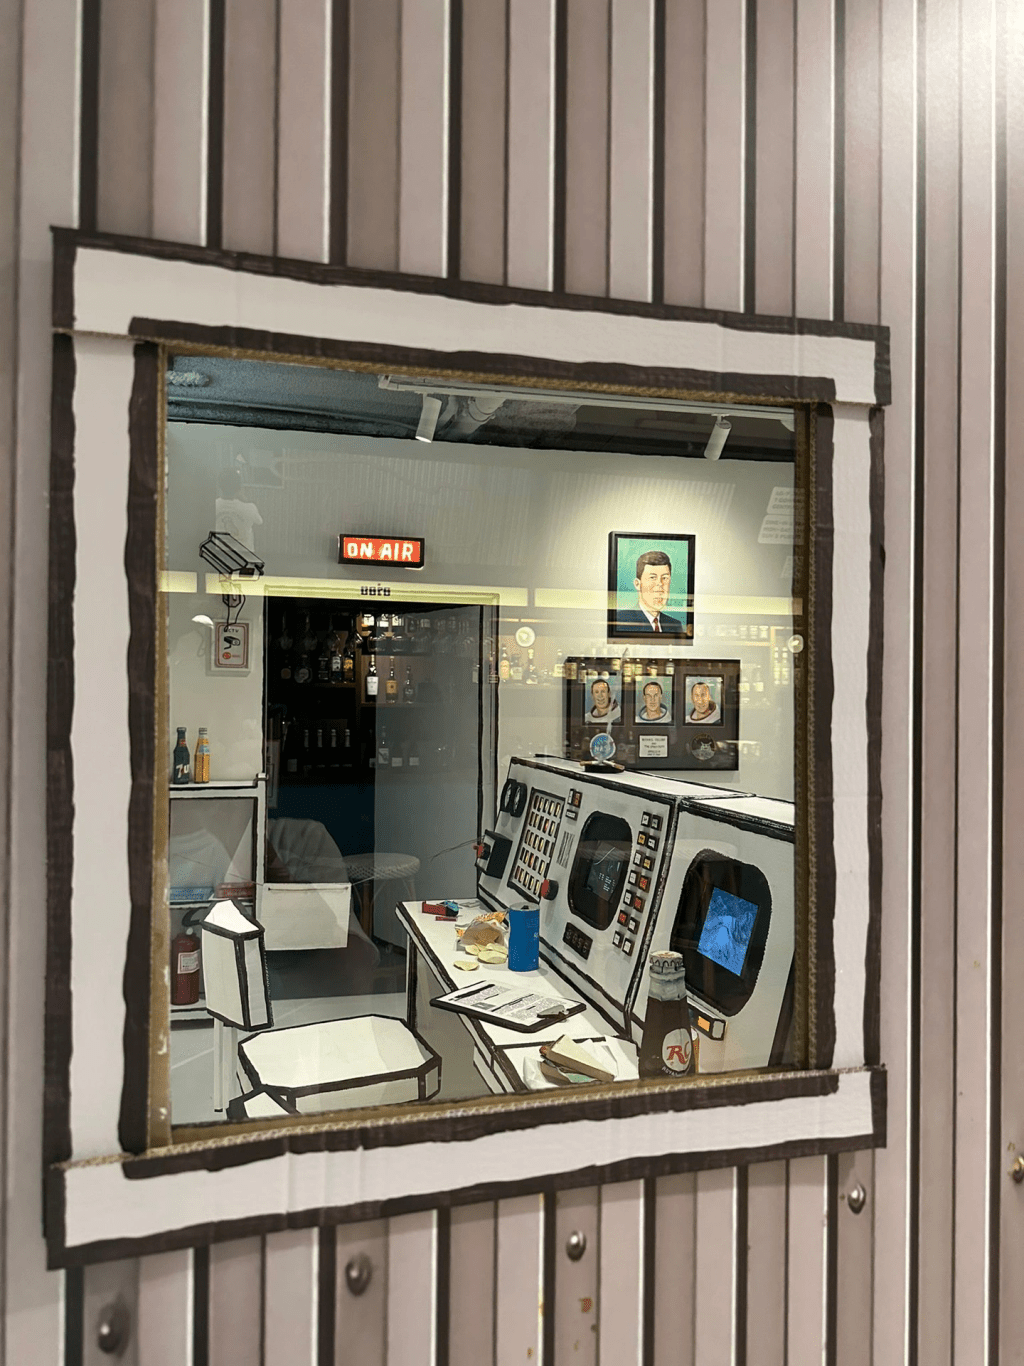 裝置按照阿波羅11號的控制室為場景概念（圖片來源：小紅書）